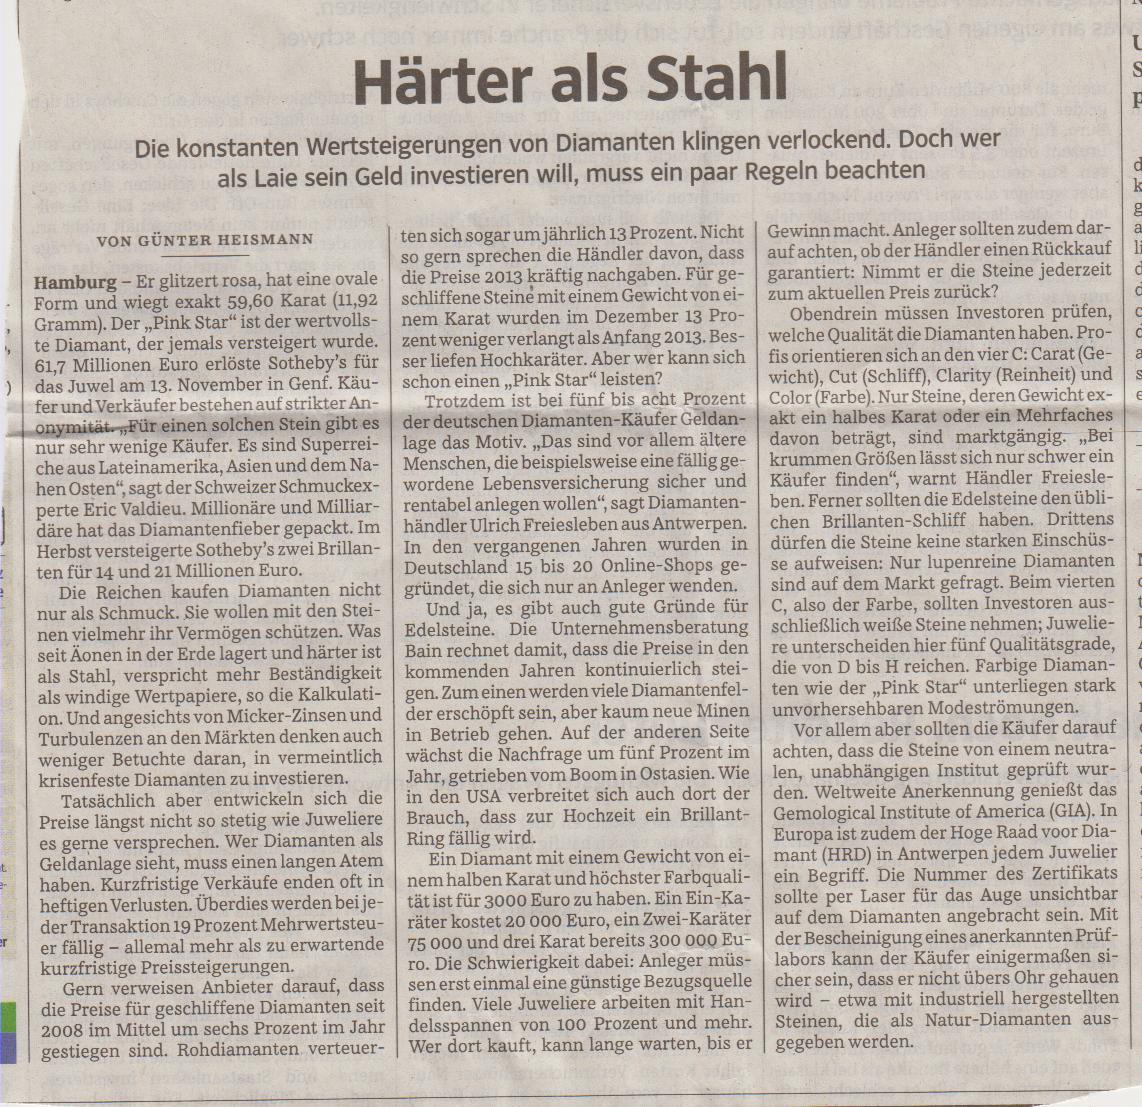 Härter-als-Stahl